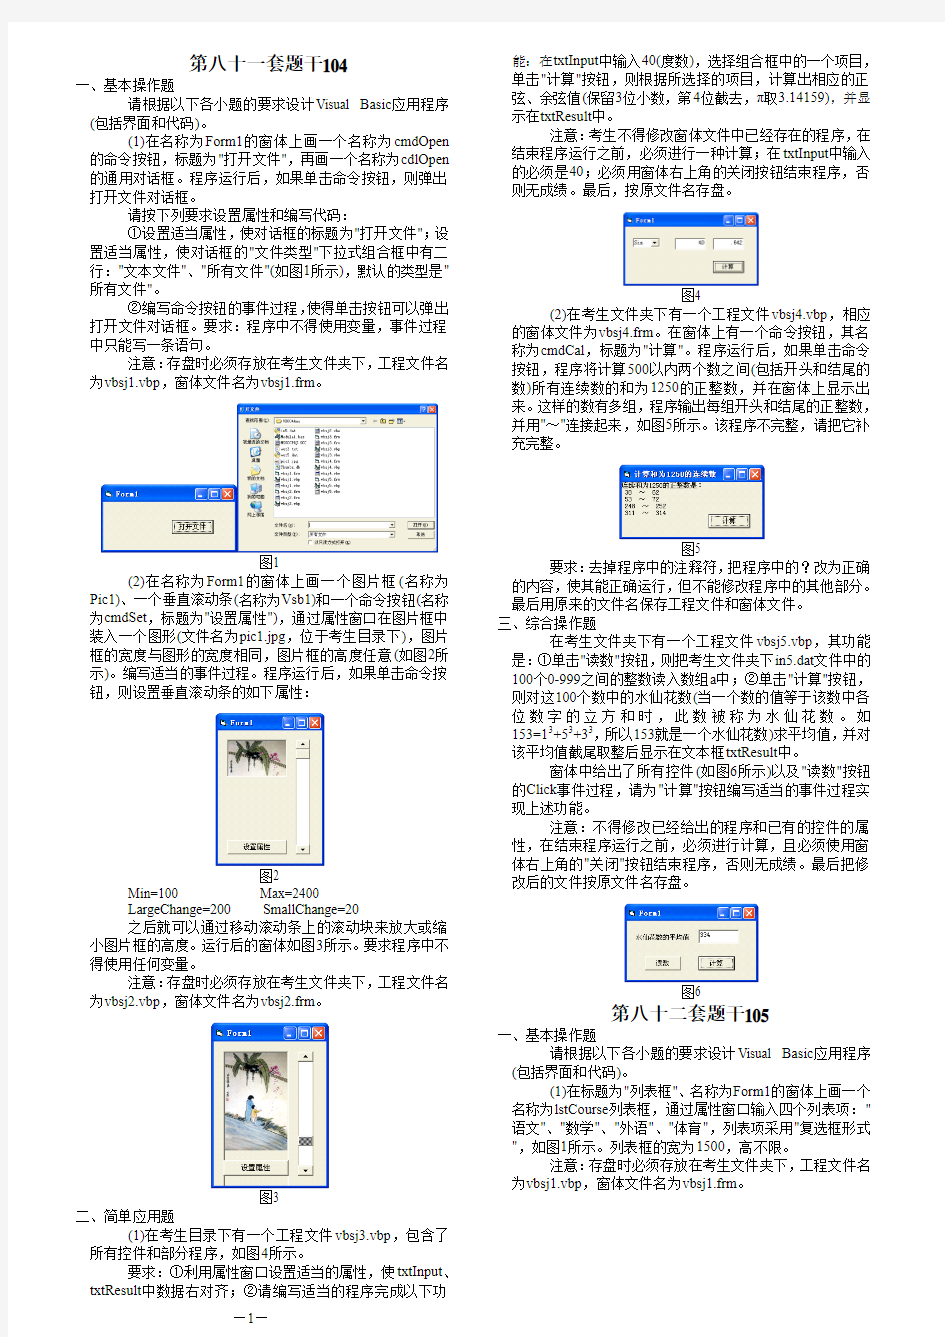 2013年9月全国计算机等级考试二级VB无纸化上机题题库题干及答案解析(5)